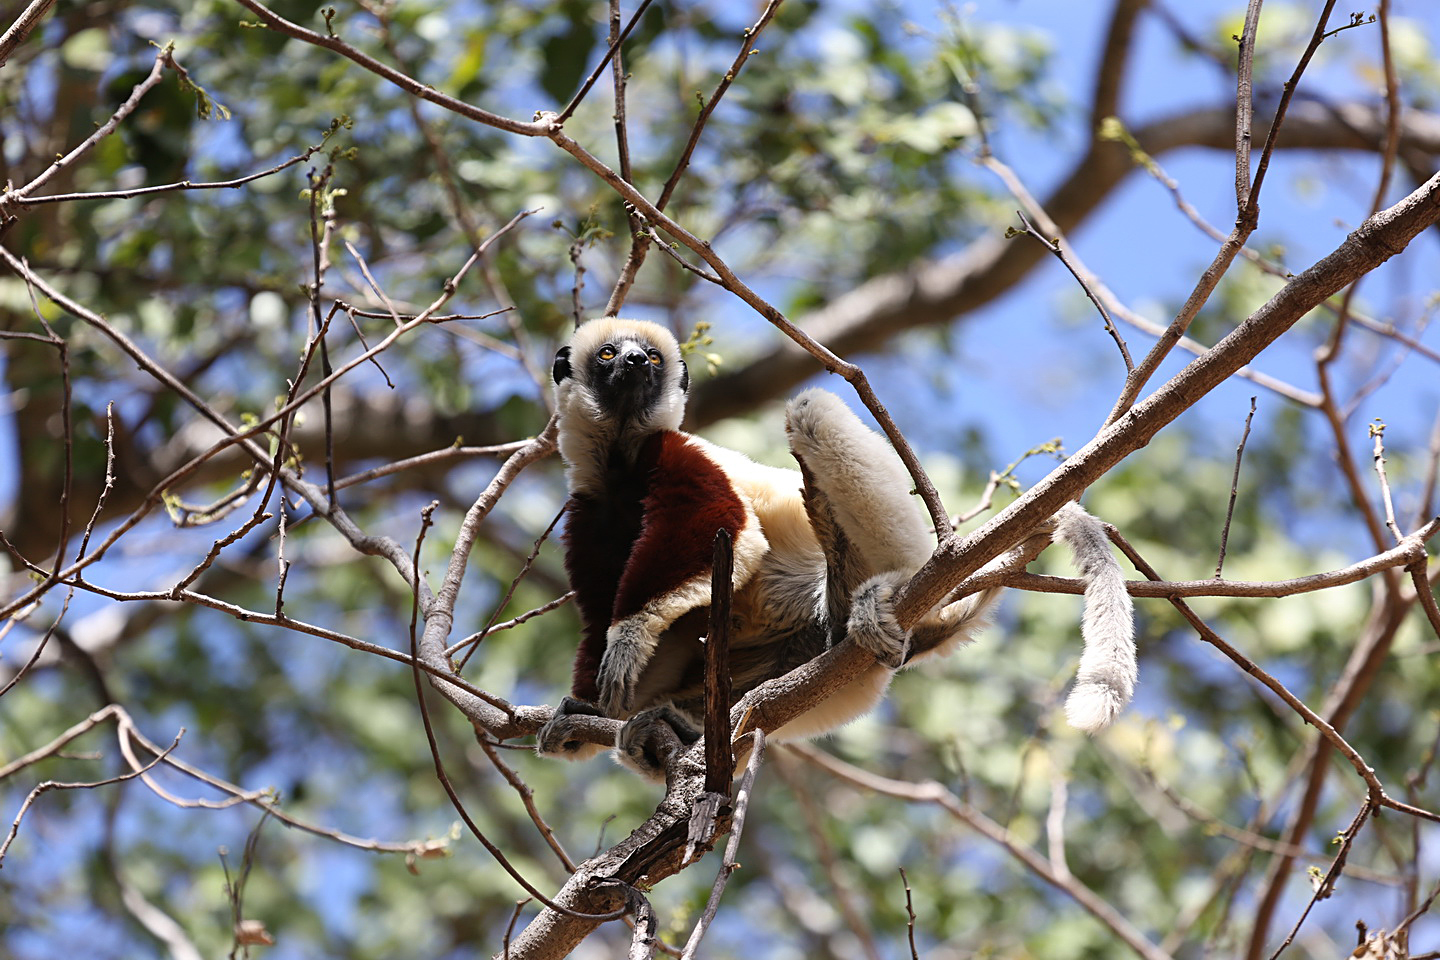 http://users.uoa.gr/~kgaze/images/Kosmas_Gazeas_Madagascar_11r.jpg